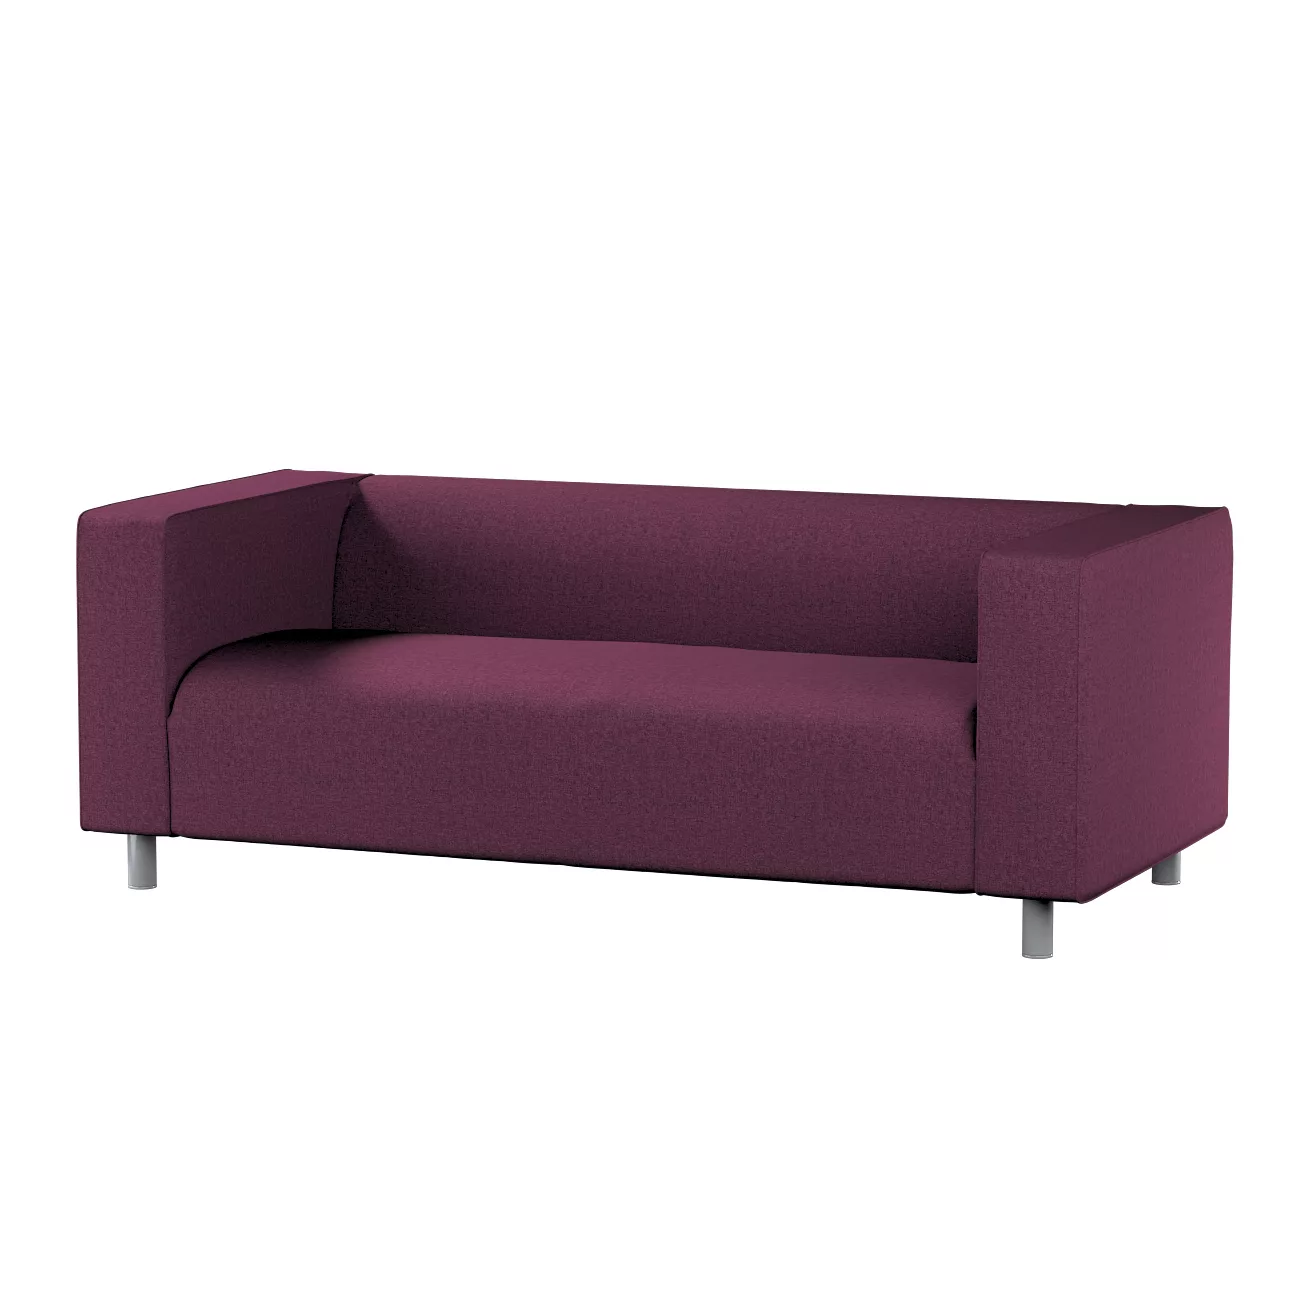 Bezug für Klippan 2-Sitzer Sofa, pflaumenviolett, Sofahusse, Klippan 2-Sitz günstig online kaufen